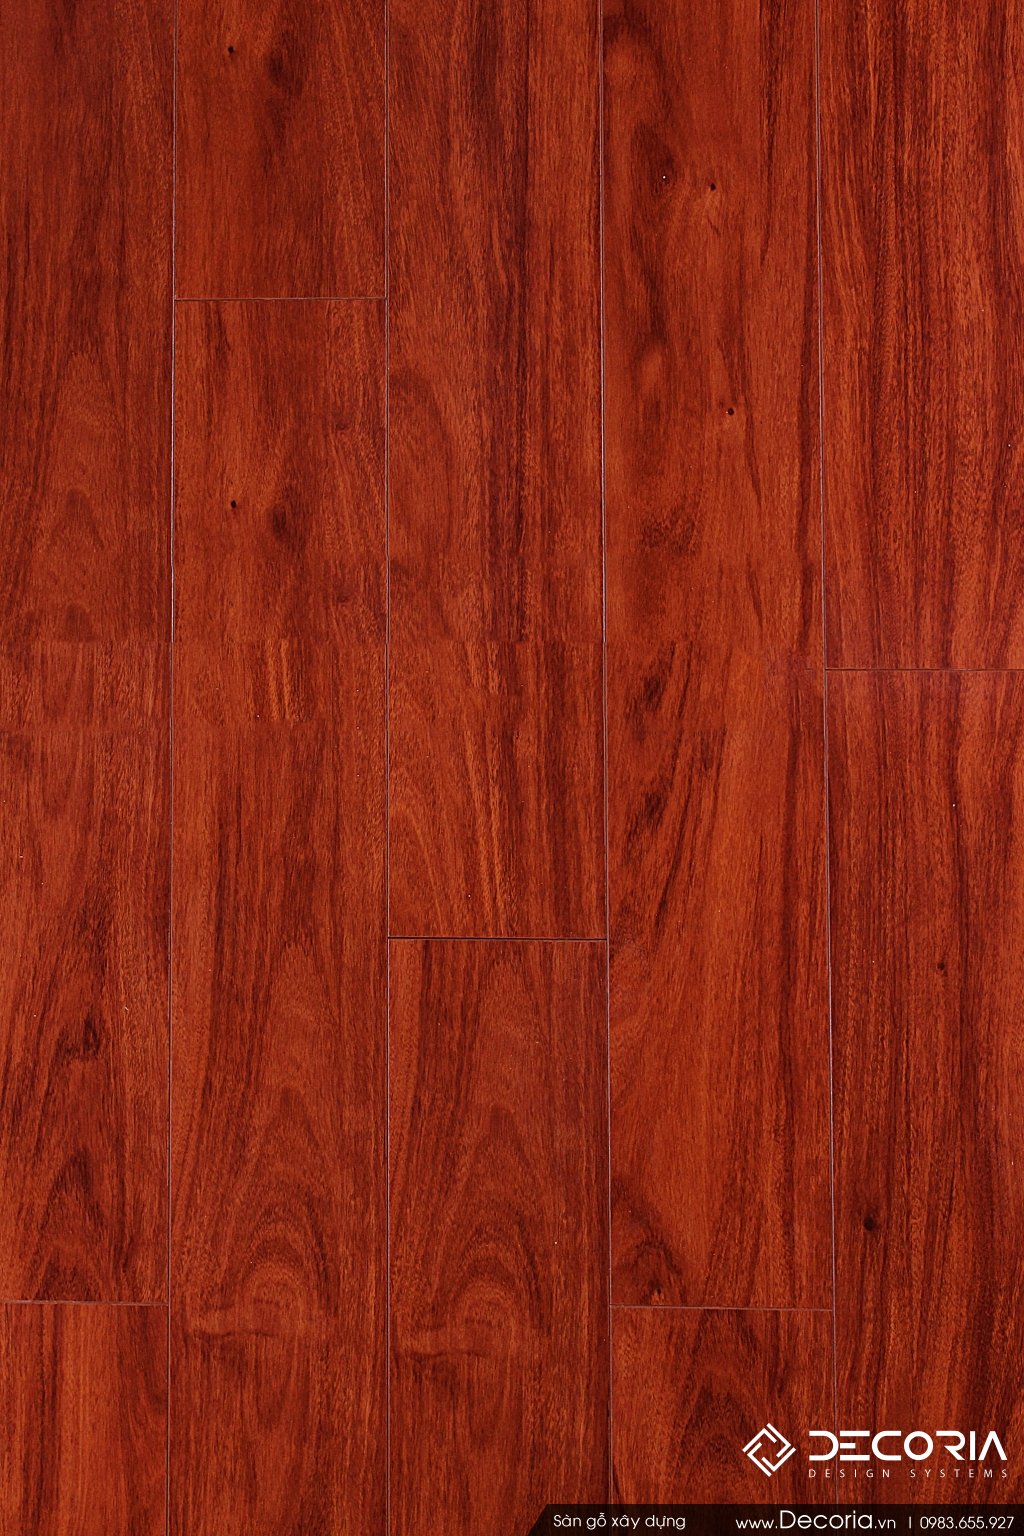 Sàn gỗ màu Gụ